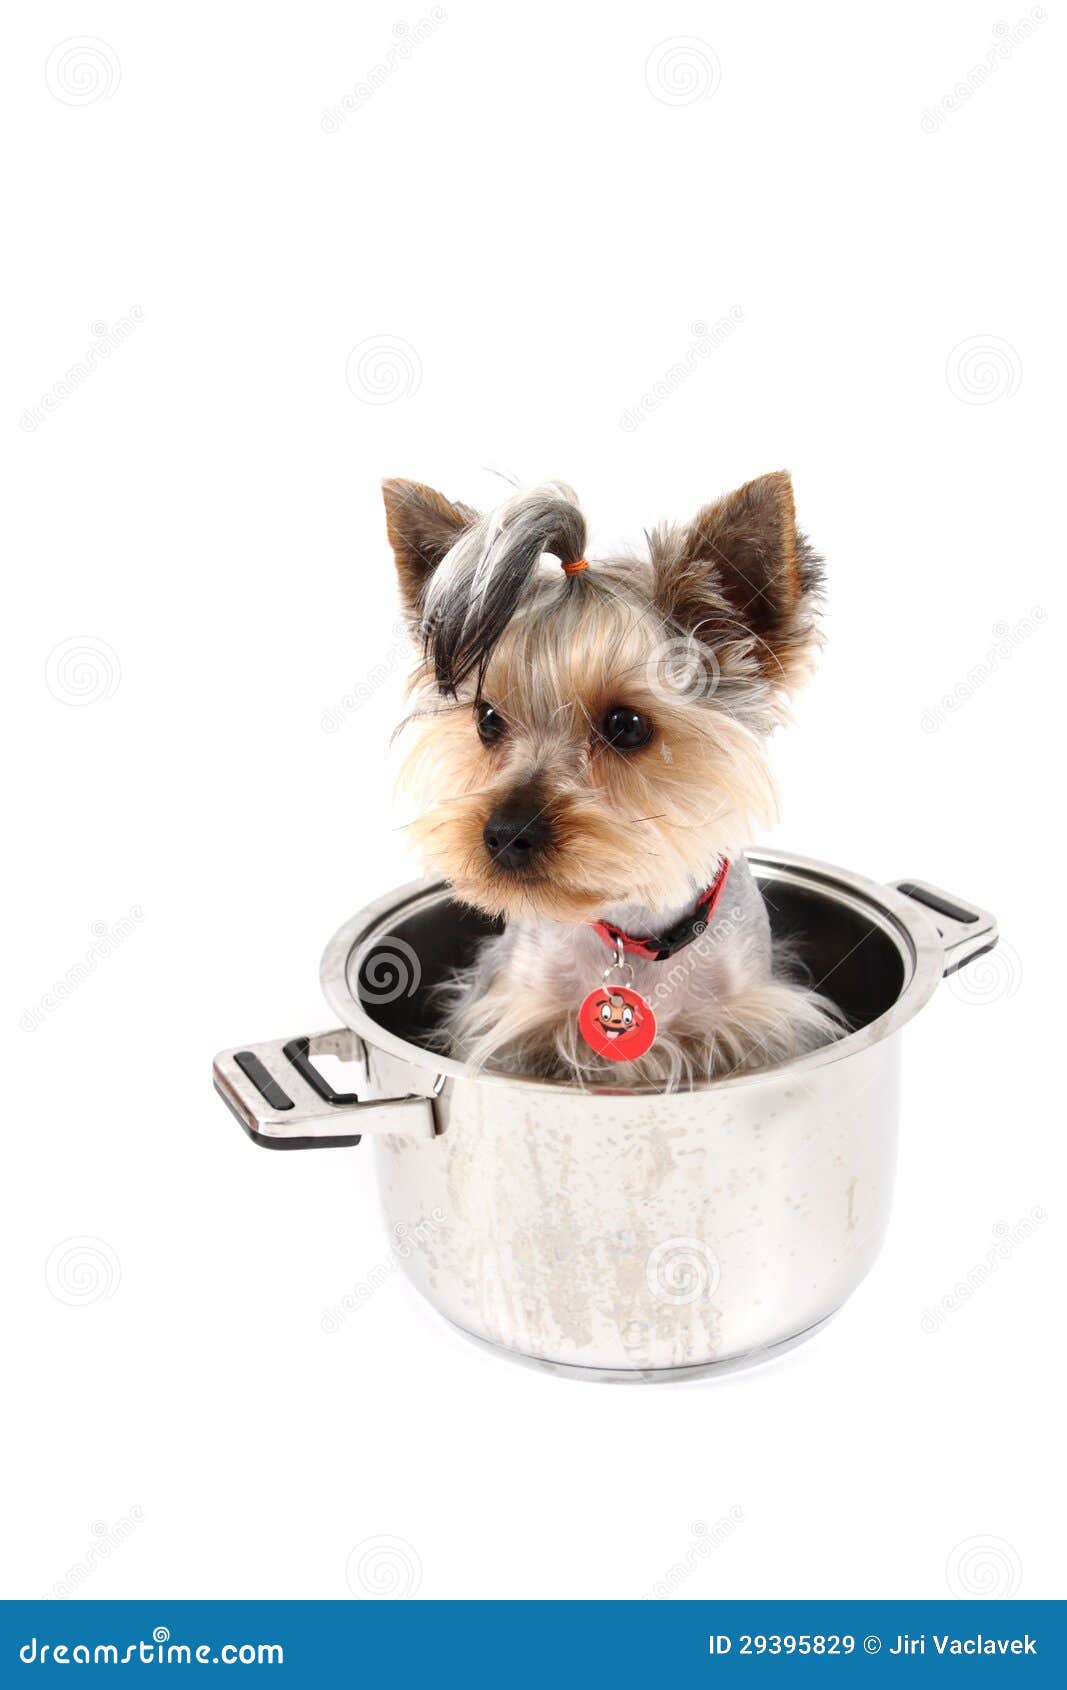 Doggy pot